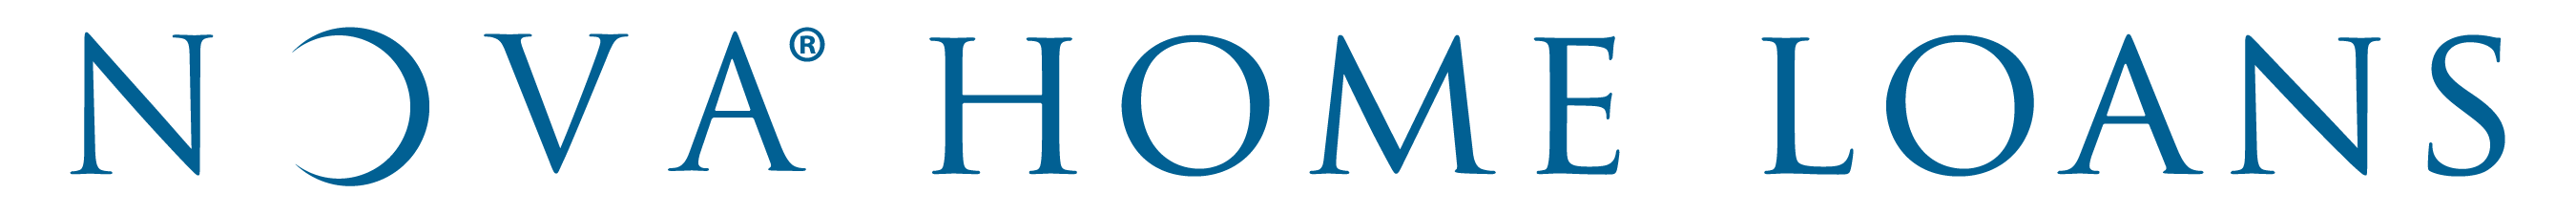 Nova Home Loans logo